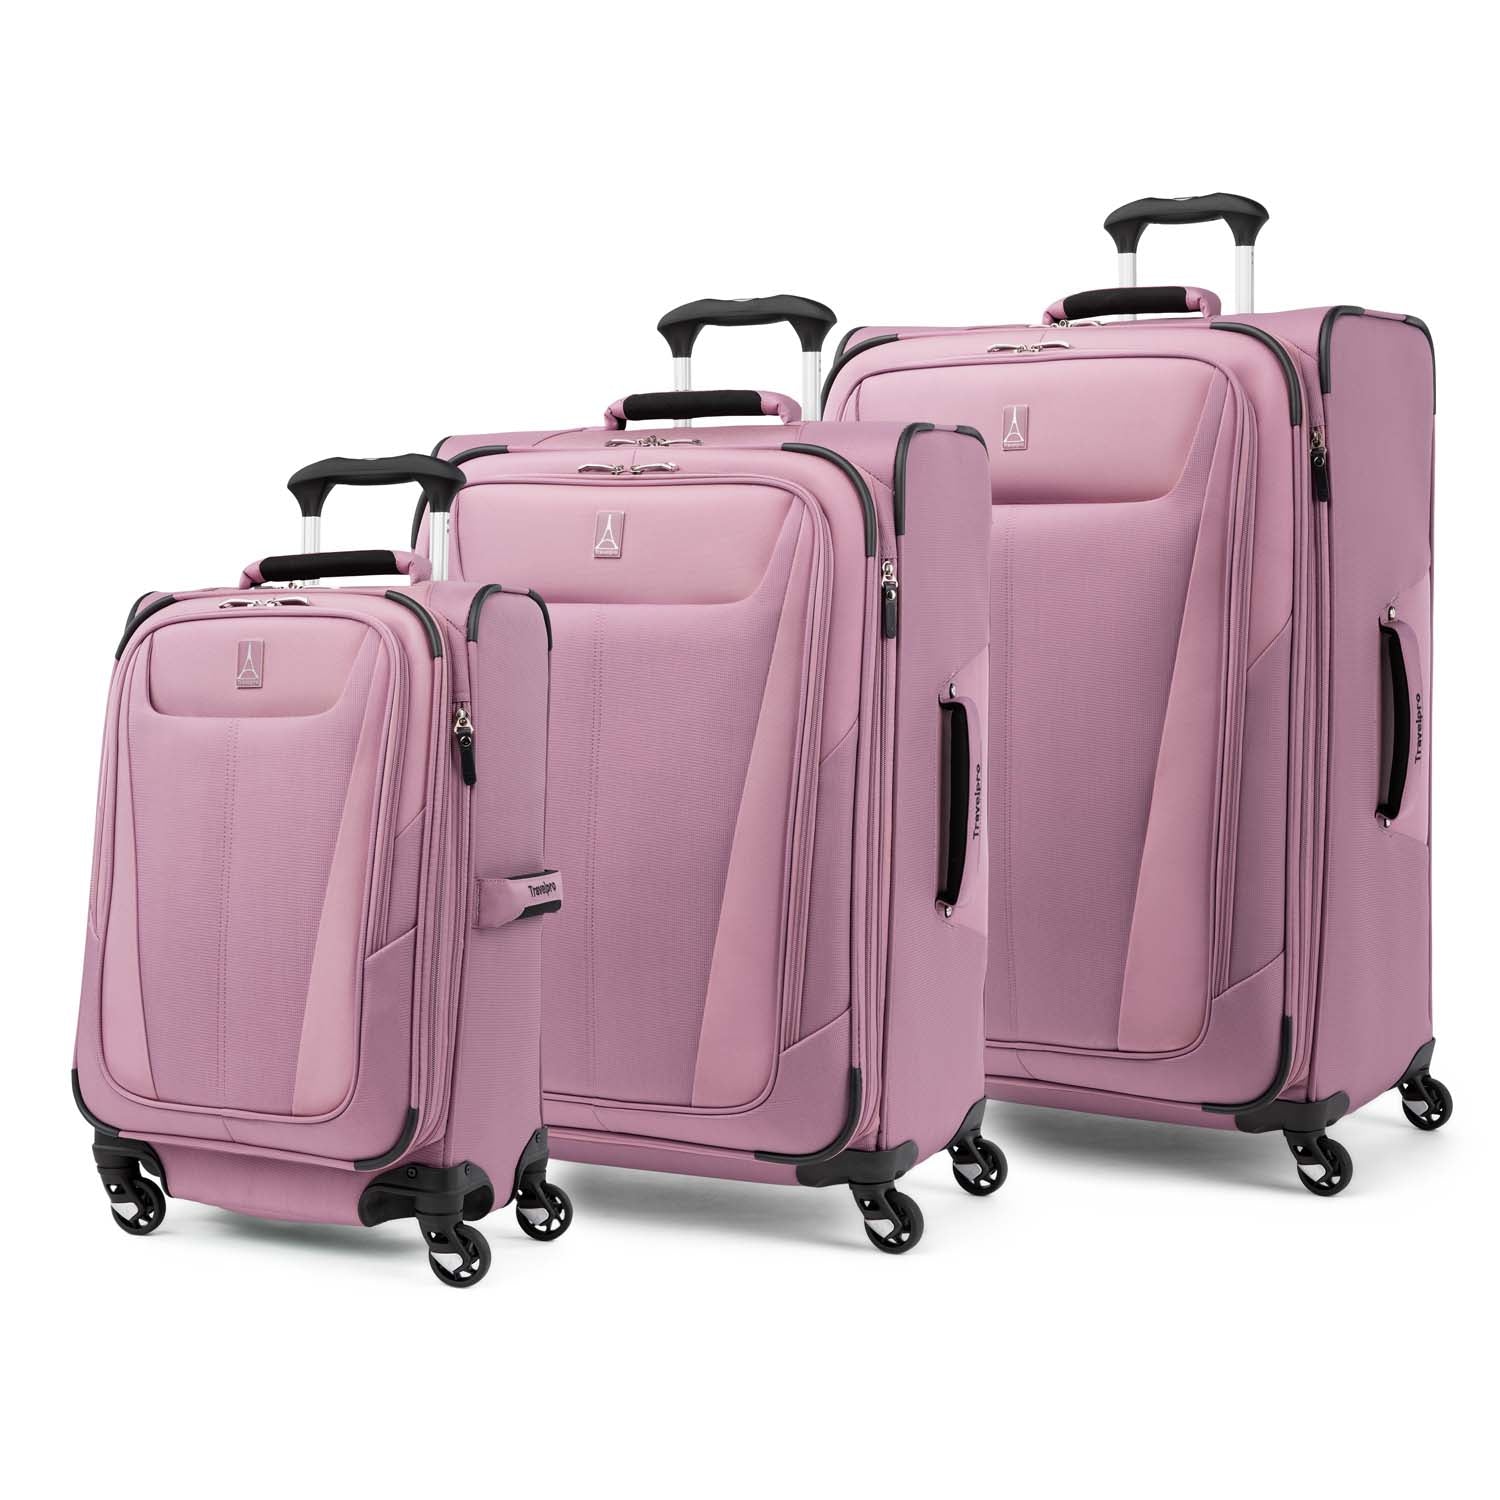 Maxlite®5: Floating On Air - Luggage Set